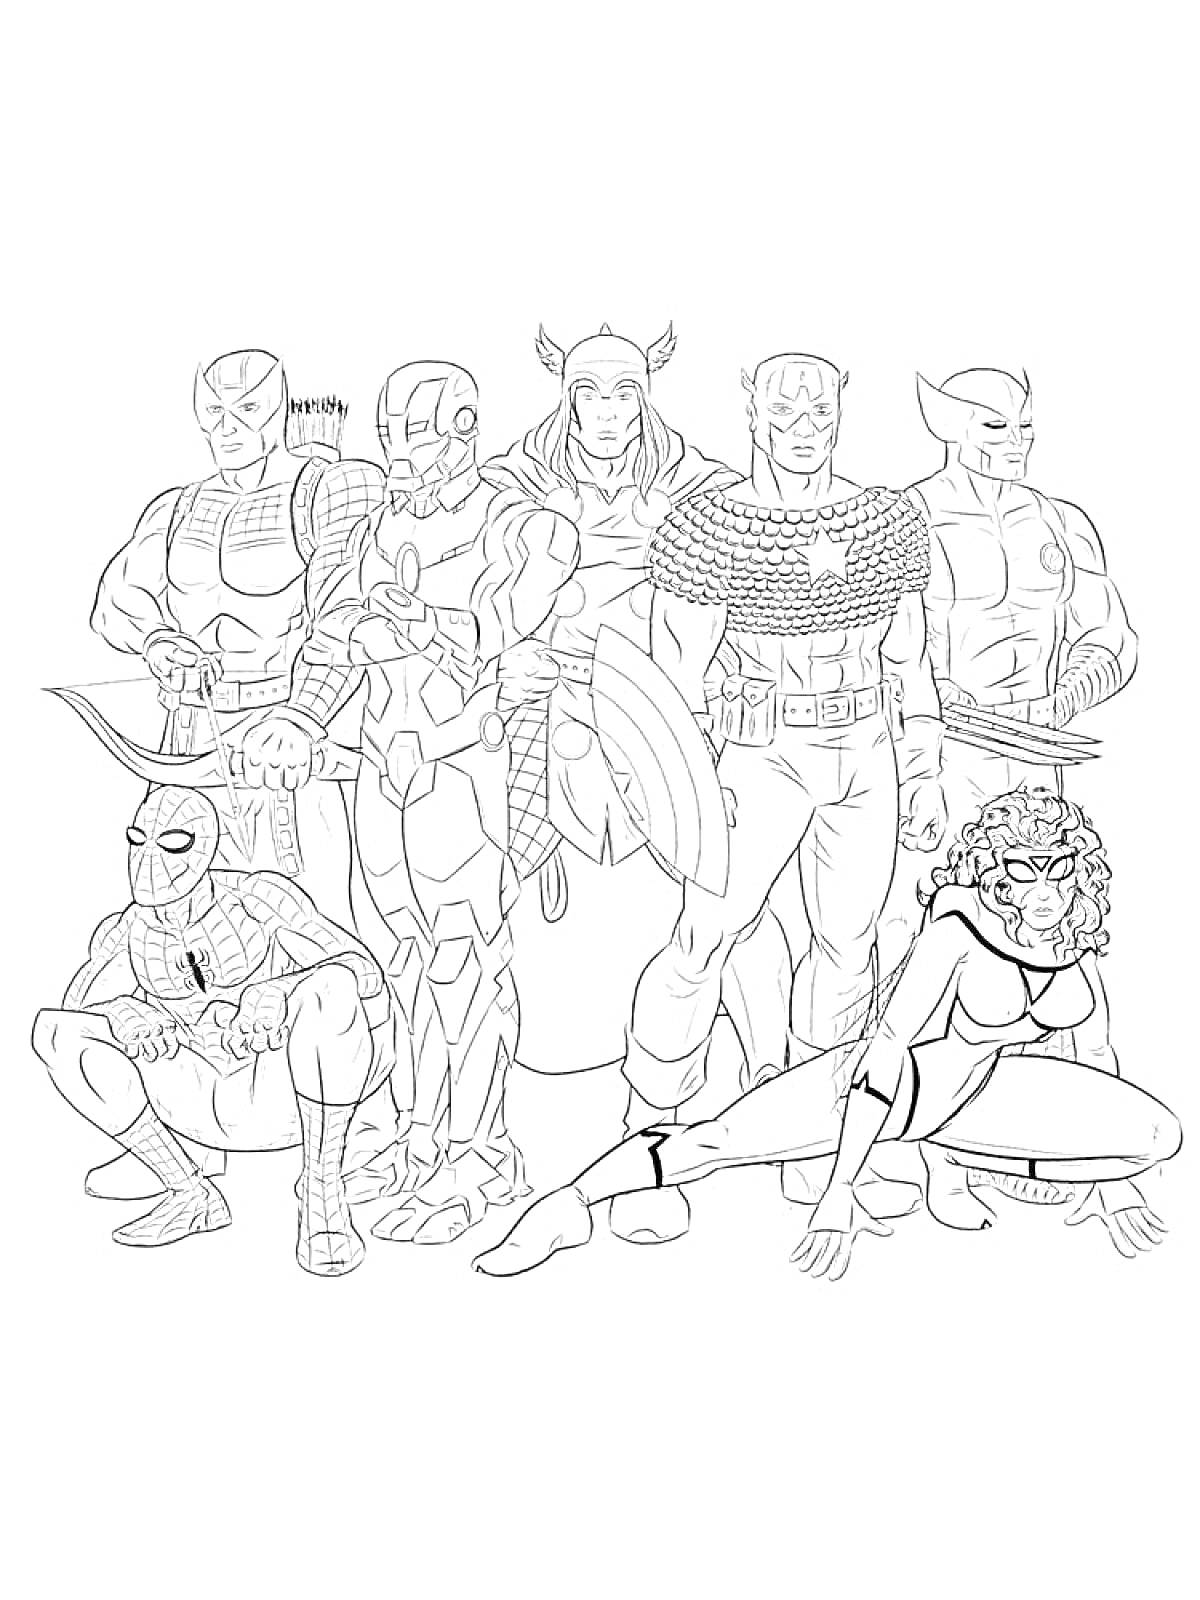 Герои Марвел: восемь персонажей, включая Человека-Паука, Железного человека, Тора, Капитана Америку и Росомаху, стоящих и сидящих в различных позах